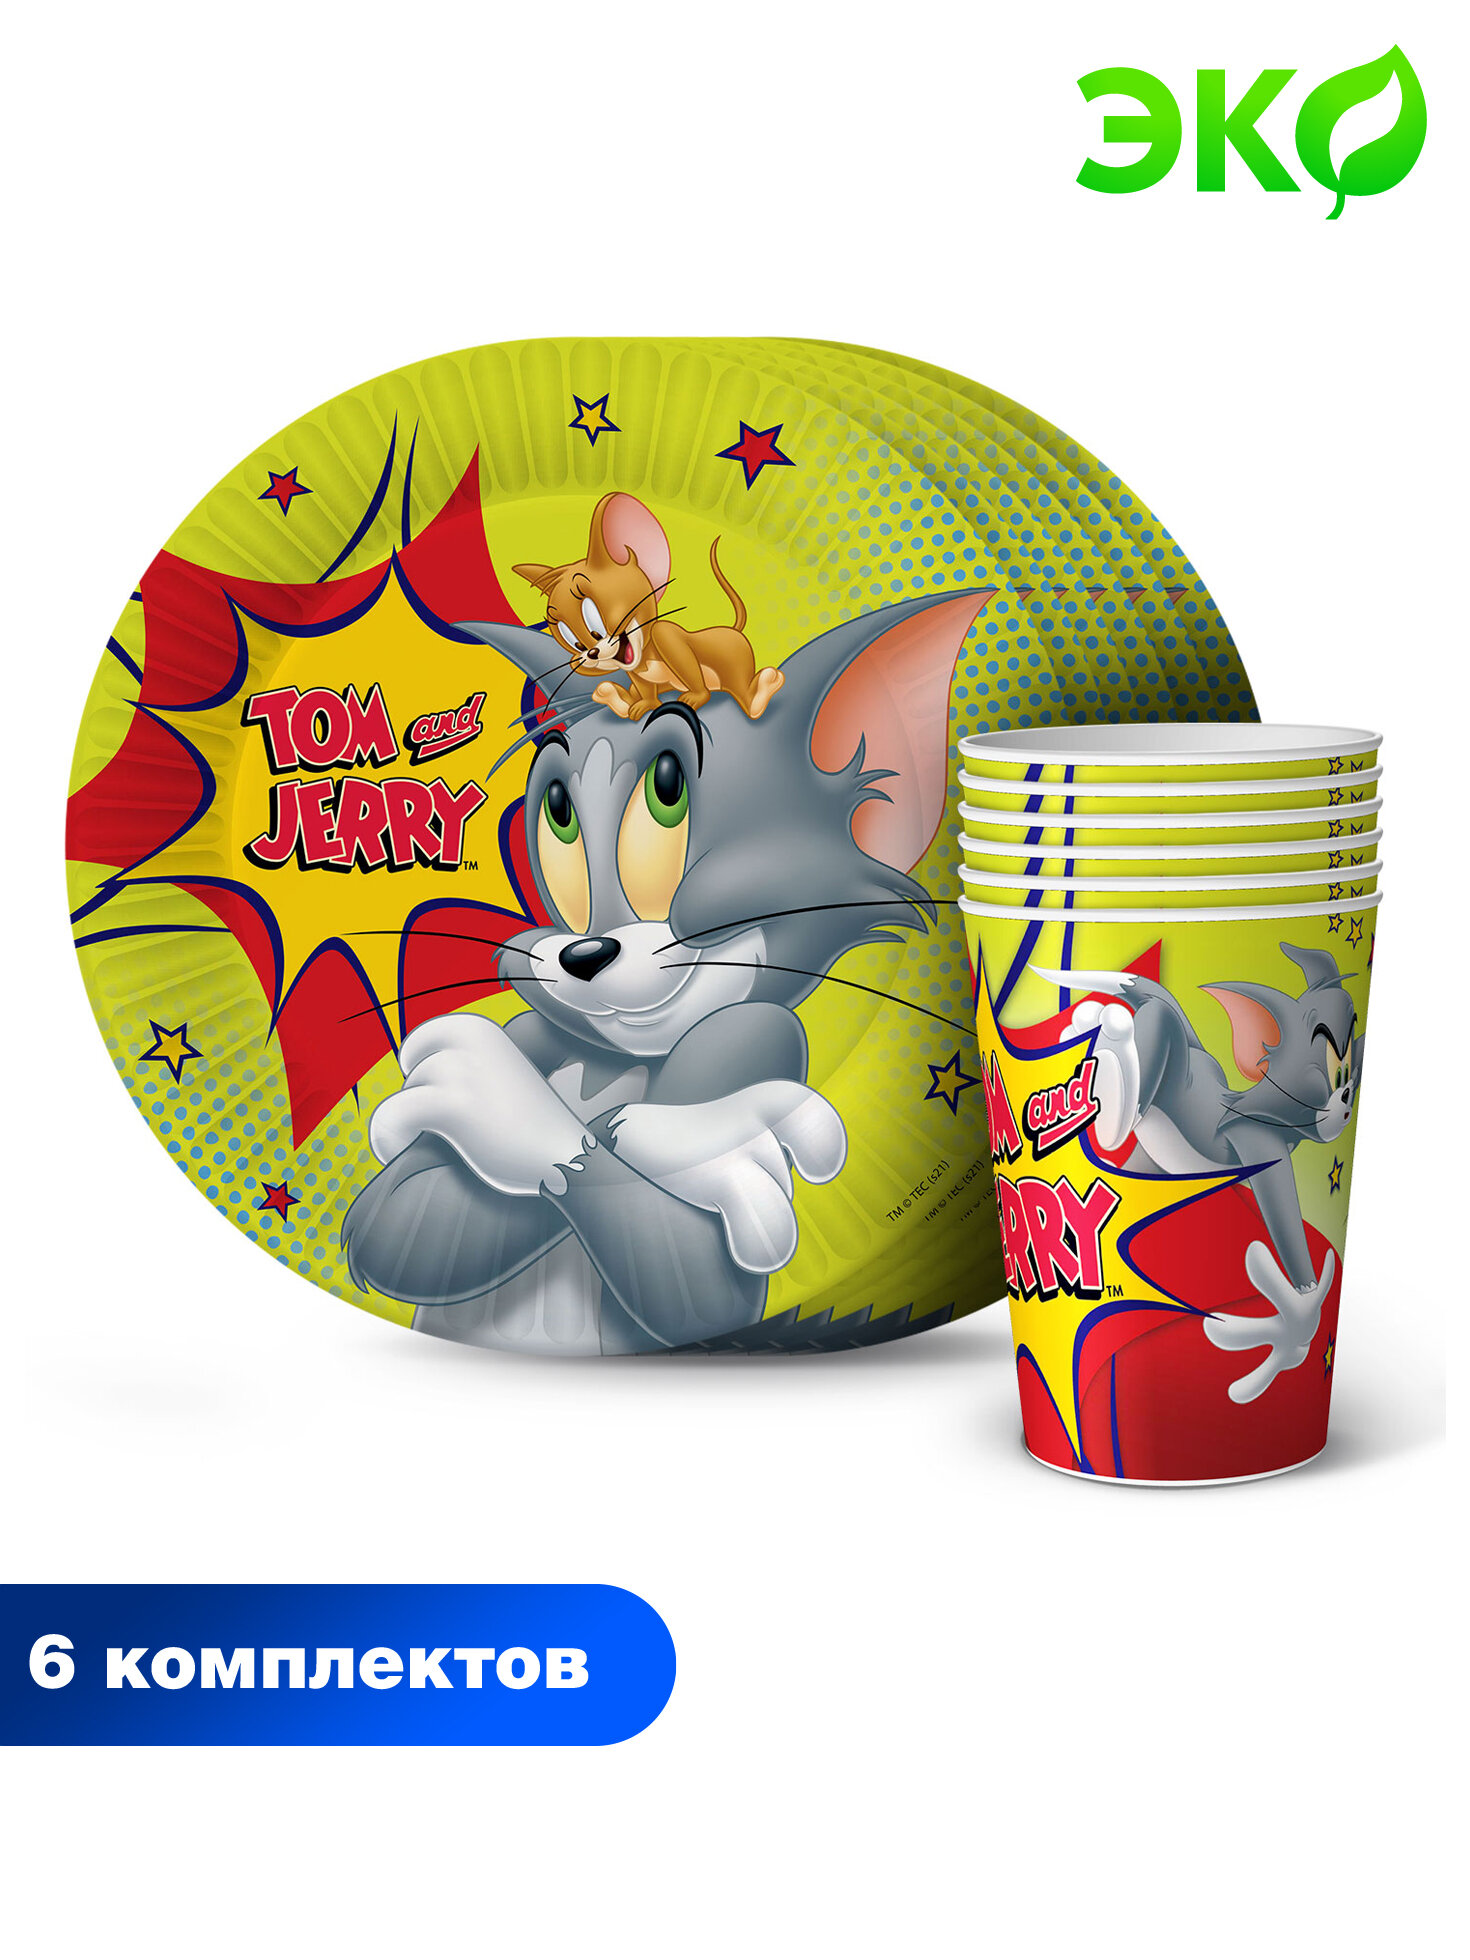 Набор бумажной одноразовой посуды для праздника Tom&Jerry\Том и Джерри № 2, зеленый (стаканчики 6 шт, тарелки 6 шт.) ND Play